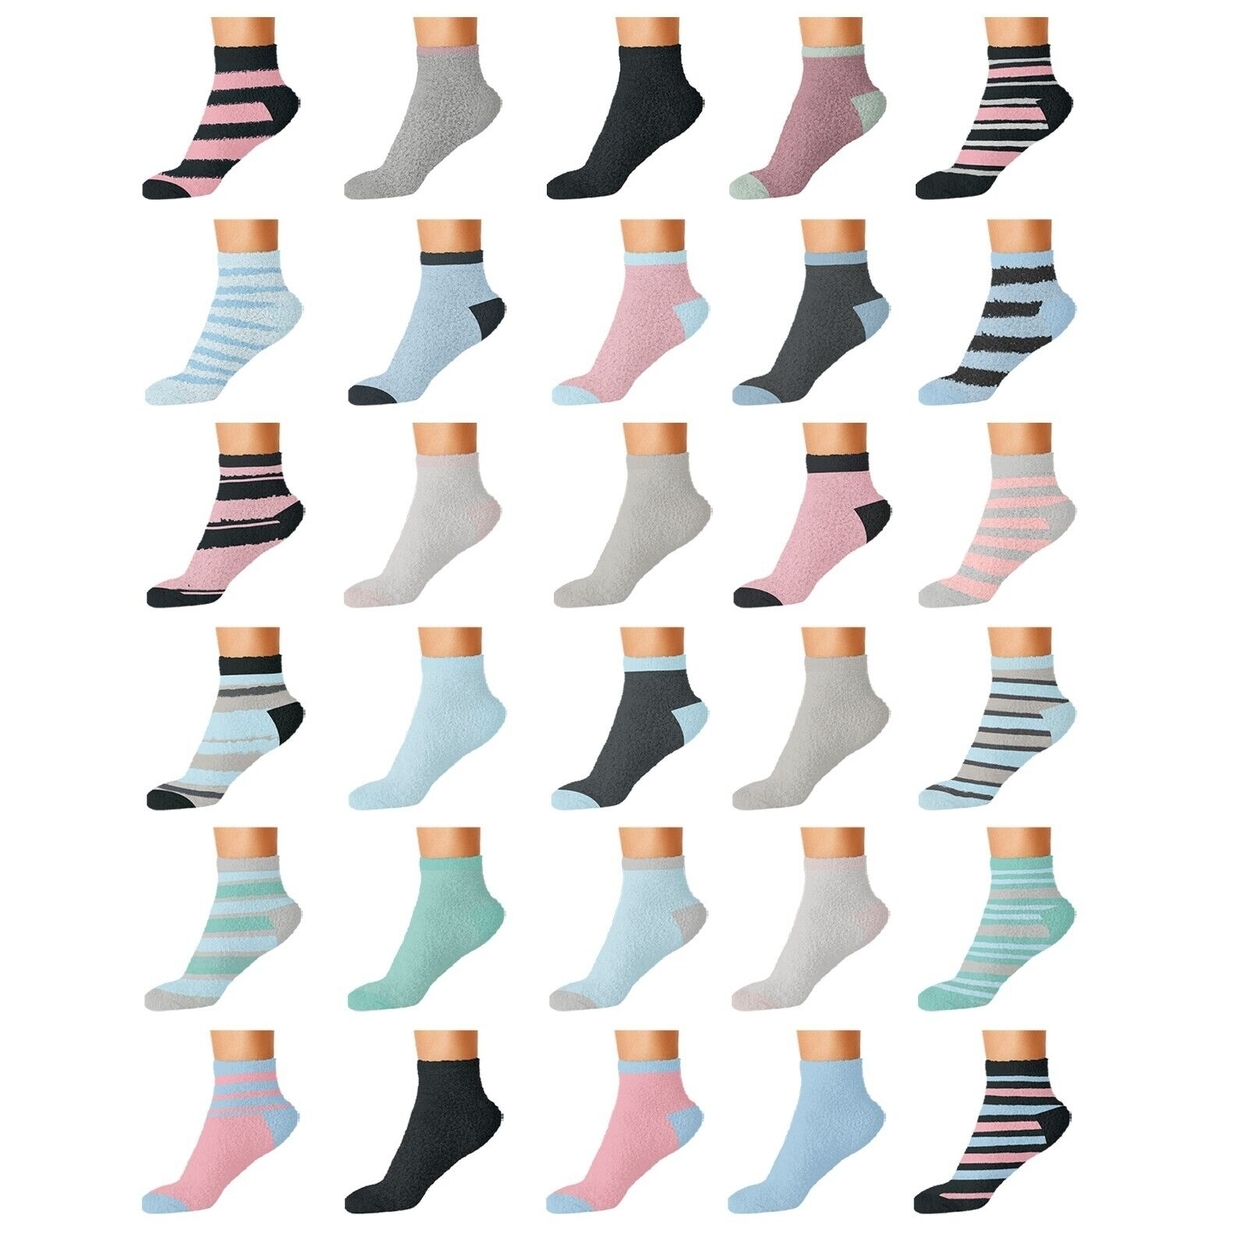 20-Pairs: Women's Cozy Warm Fuzzy Fluffy Crew Socks - Striped